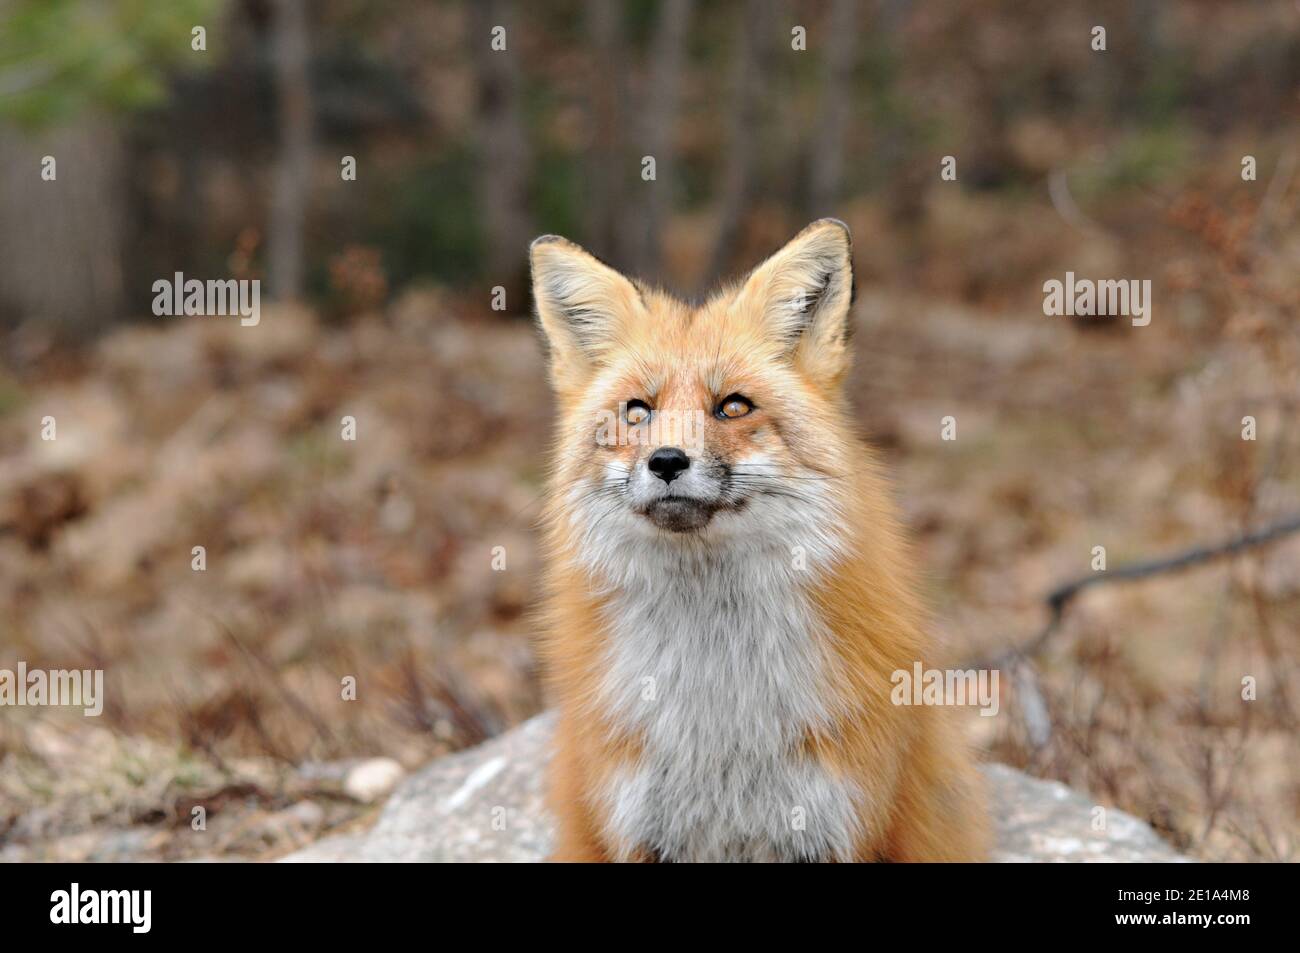 Rotfuchs Kopf erschossen Nahaufnahme Vorderprofil Blick in Richtung des Himmels mit einem unscharfen Hintergrund in seiner Umgebung und Lebensraum. Fox-Bild. Bild. Stockfoto